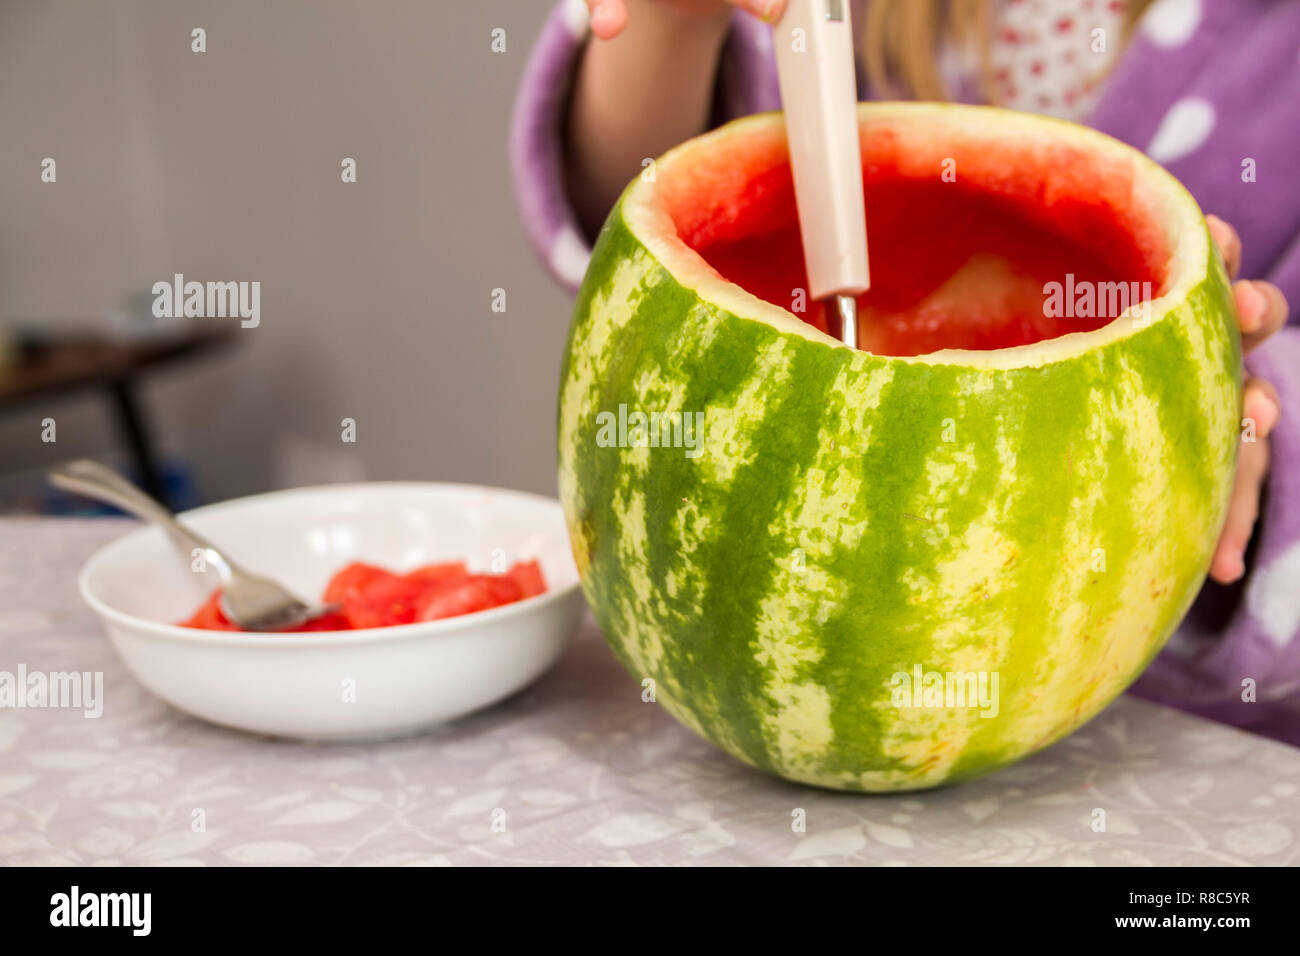 Wassermelone Obst, Innen, gesund Leben-Konzept, 5 am Tag, Wassermelone haut Lufthutze, große reife Wassermelone, Frühstück, grün rot Stockfoto